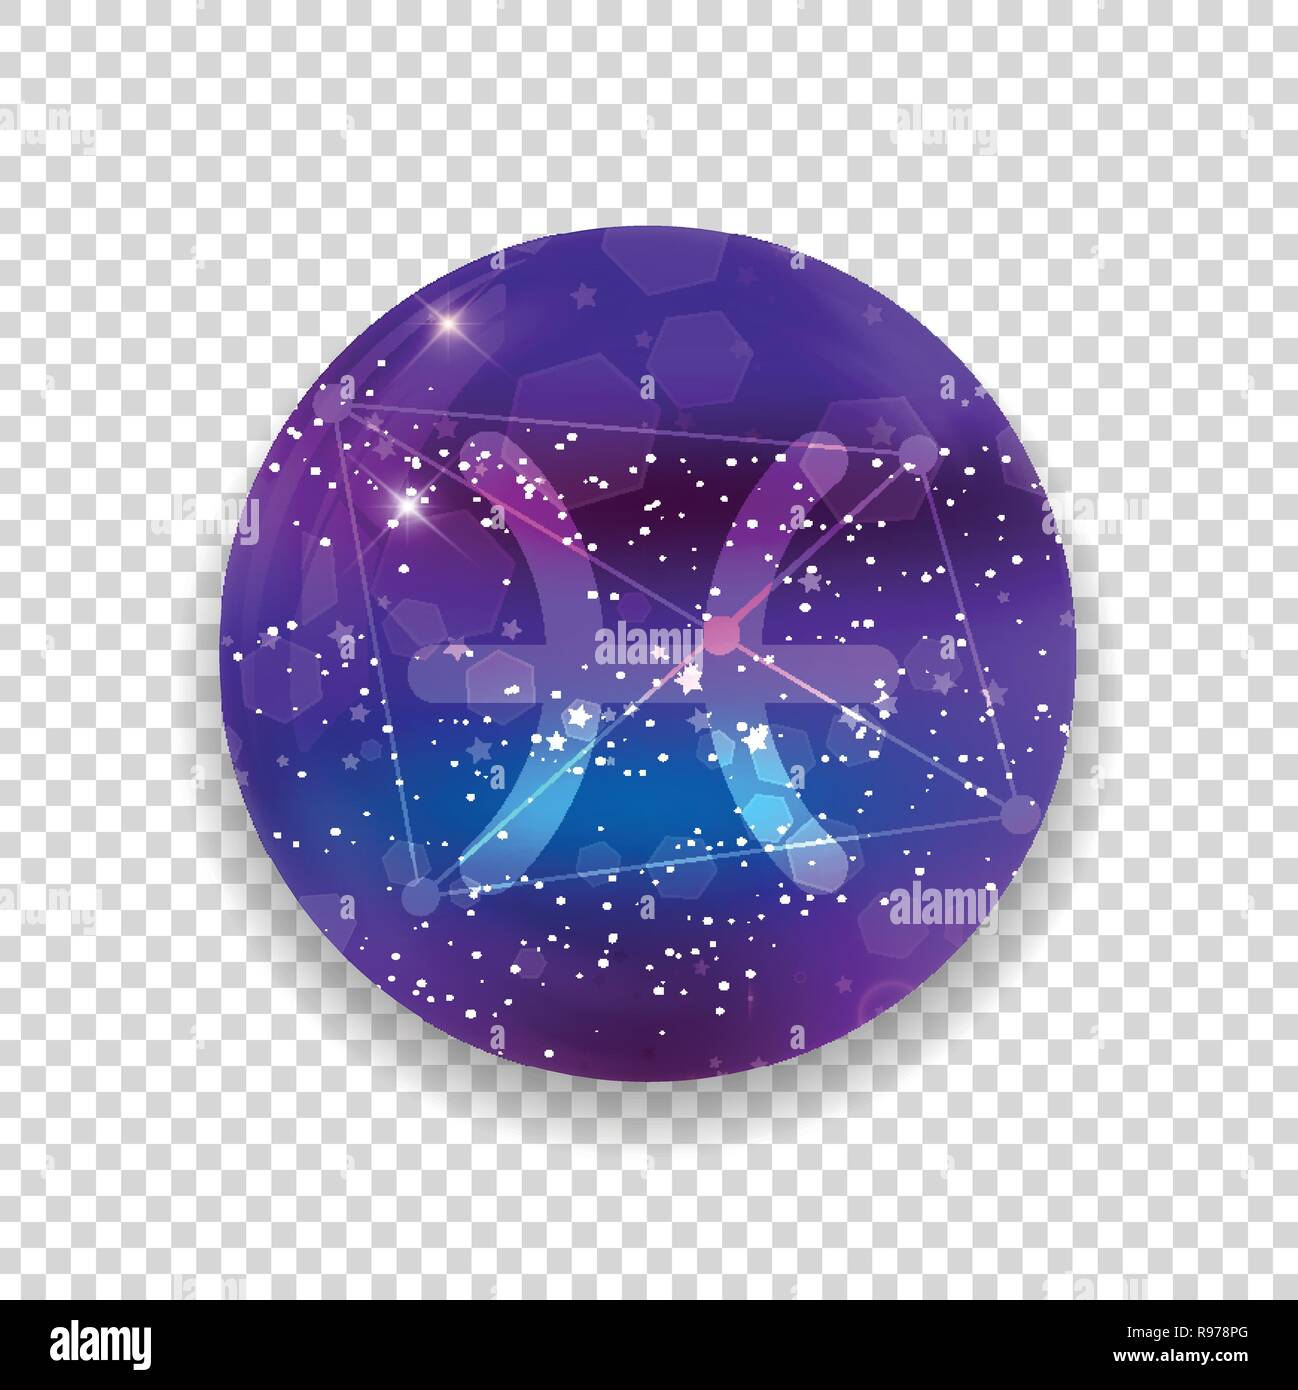 Pesci segno zodiacale e costellazione sul cosmica cielo viola con stelle luccicanti e nebula isolato su sfondo trasparente. Vettore icona al neon, web bu Illustrazione Vettoriale